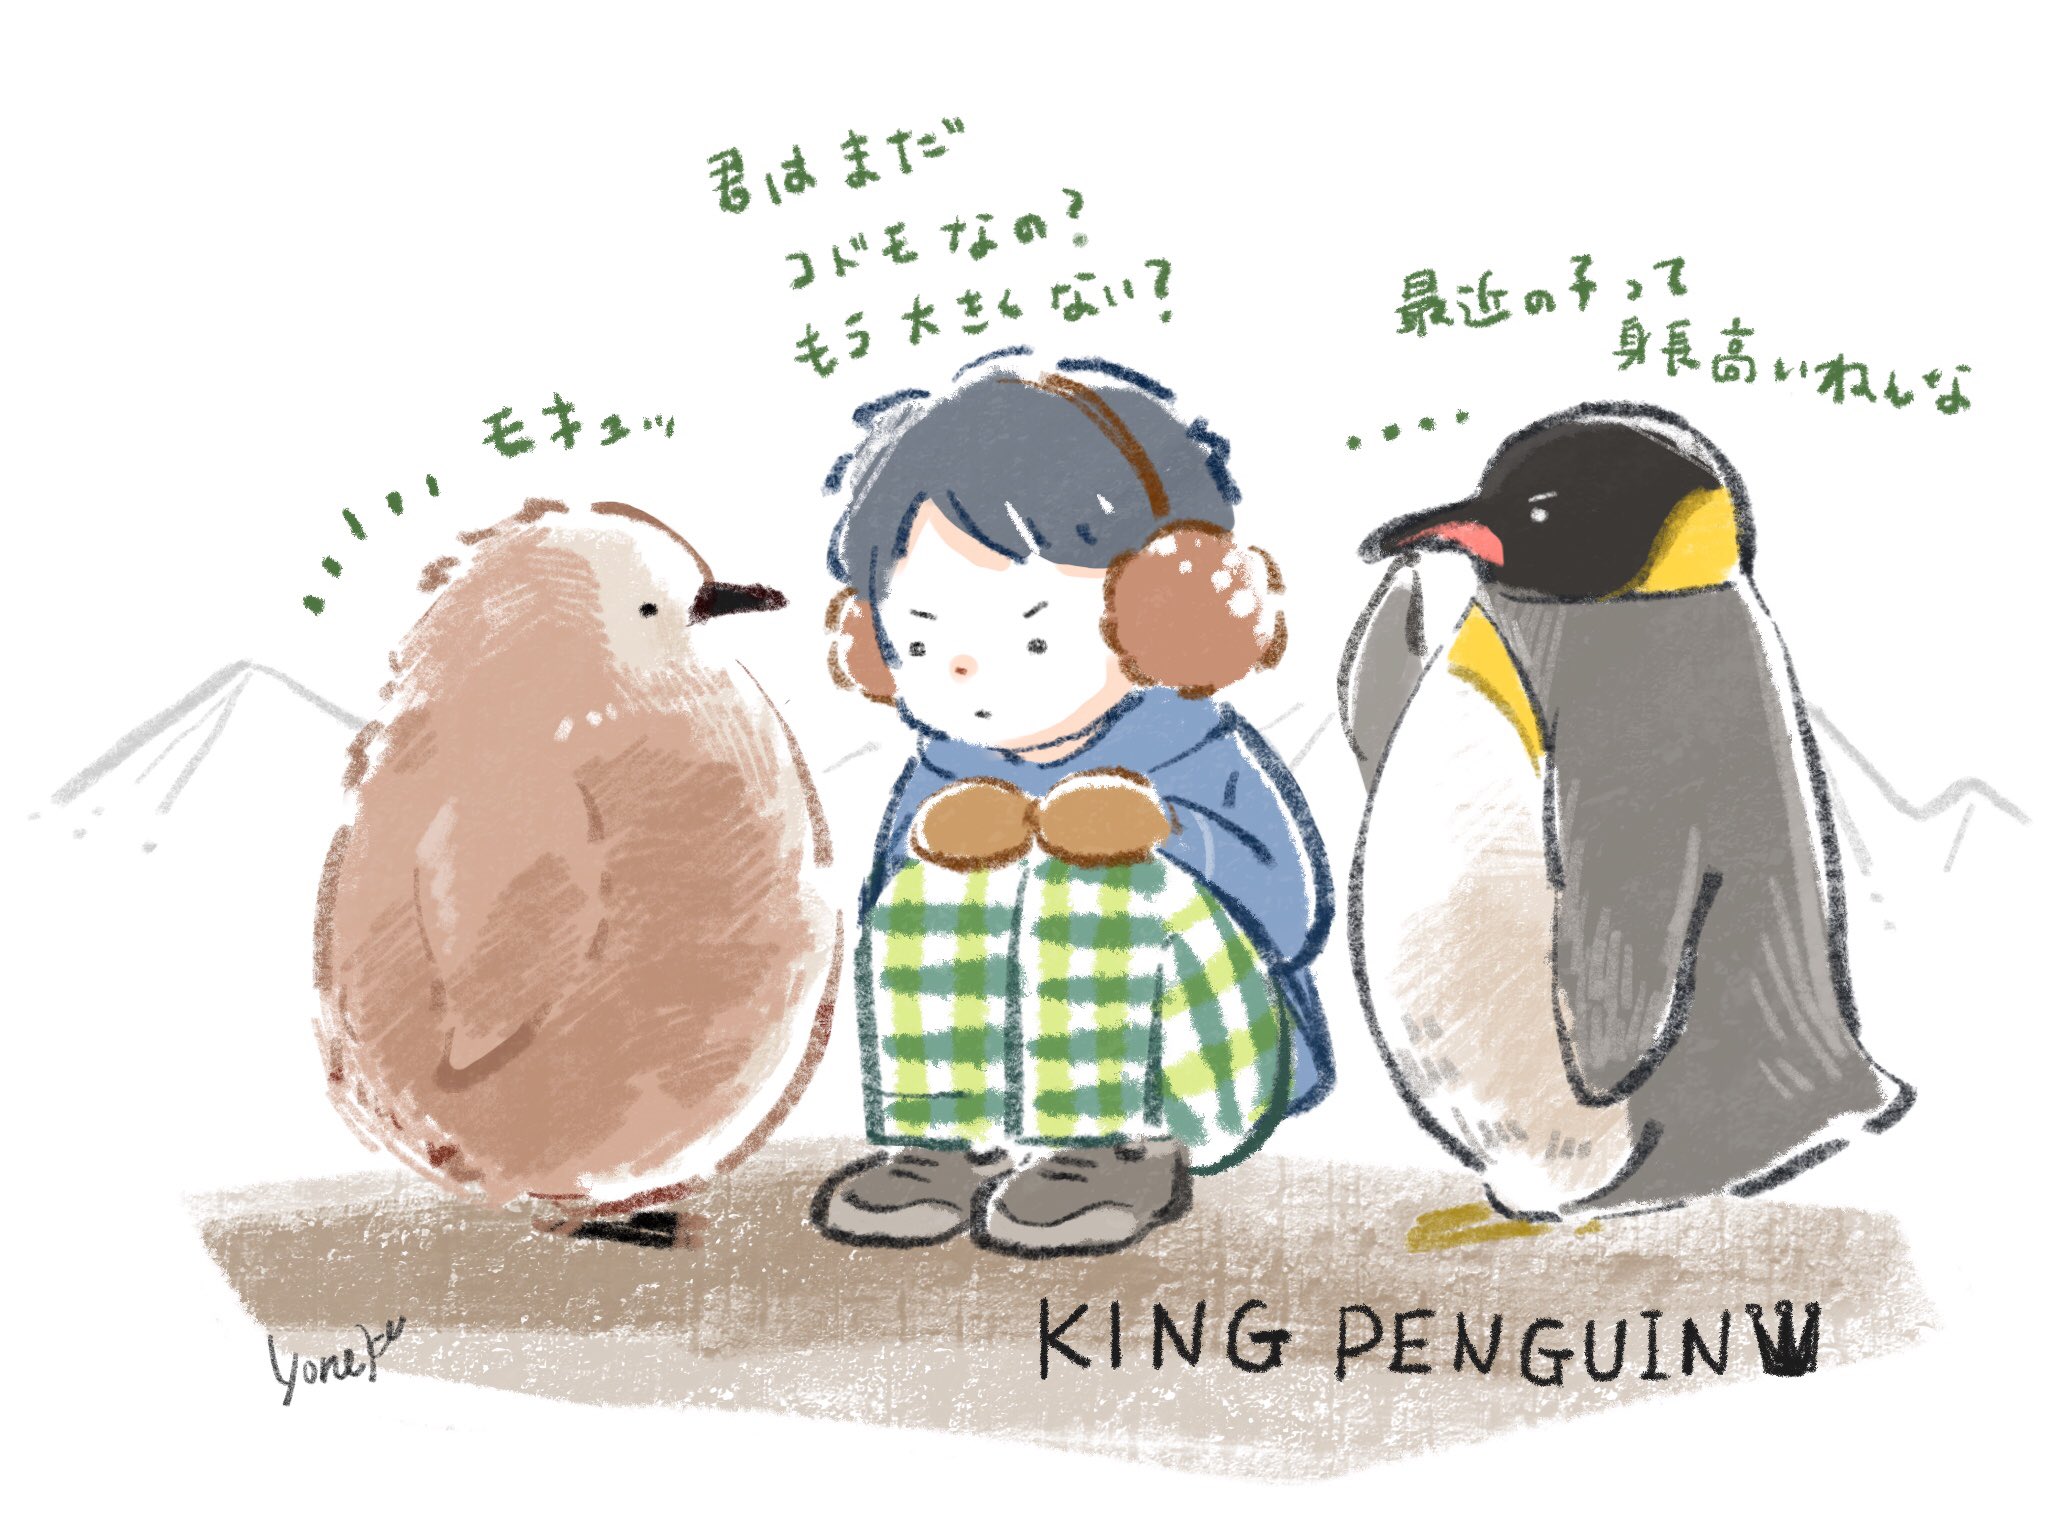 Twitter 上的 よねこめ イラストレーター キングペンギンのヒナはもさかわいい ペンギン T Co Bwgbepcrpq Twitter